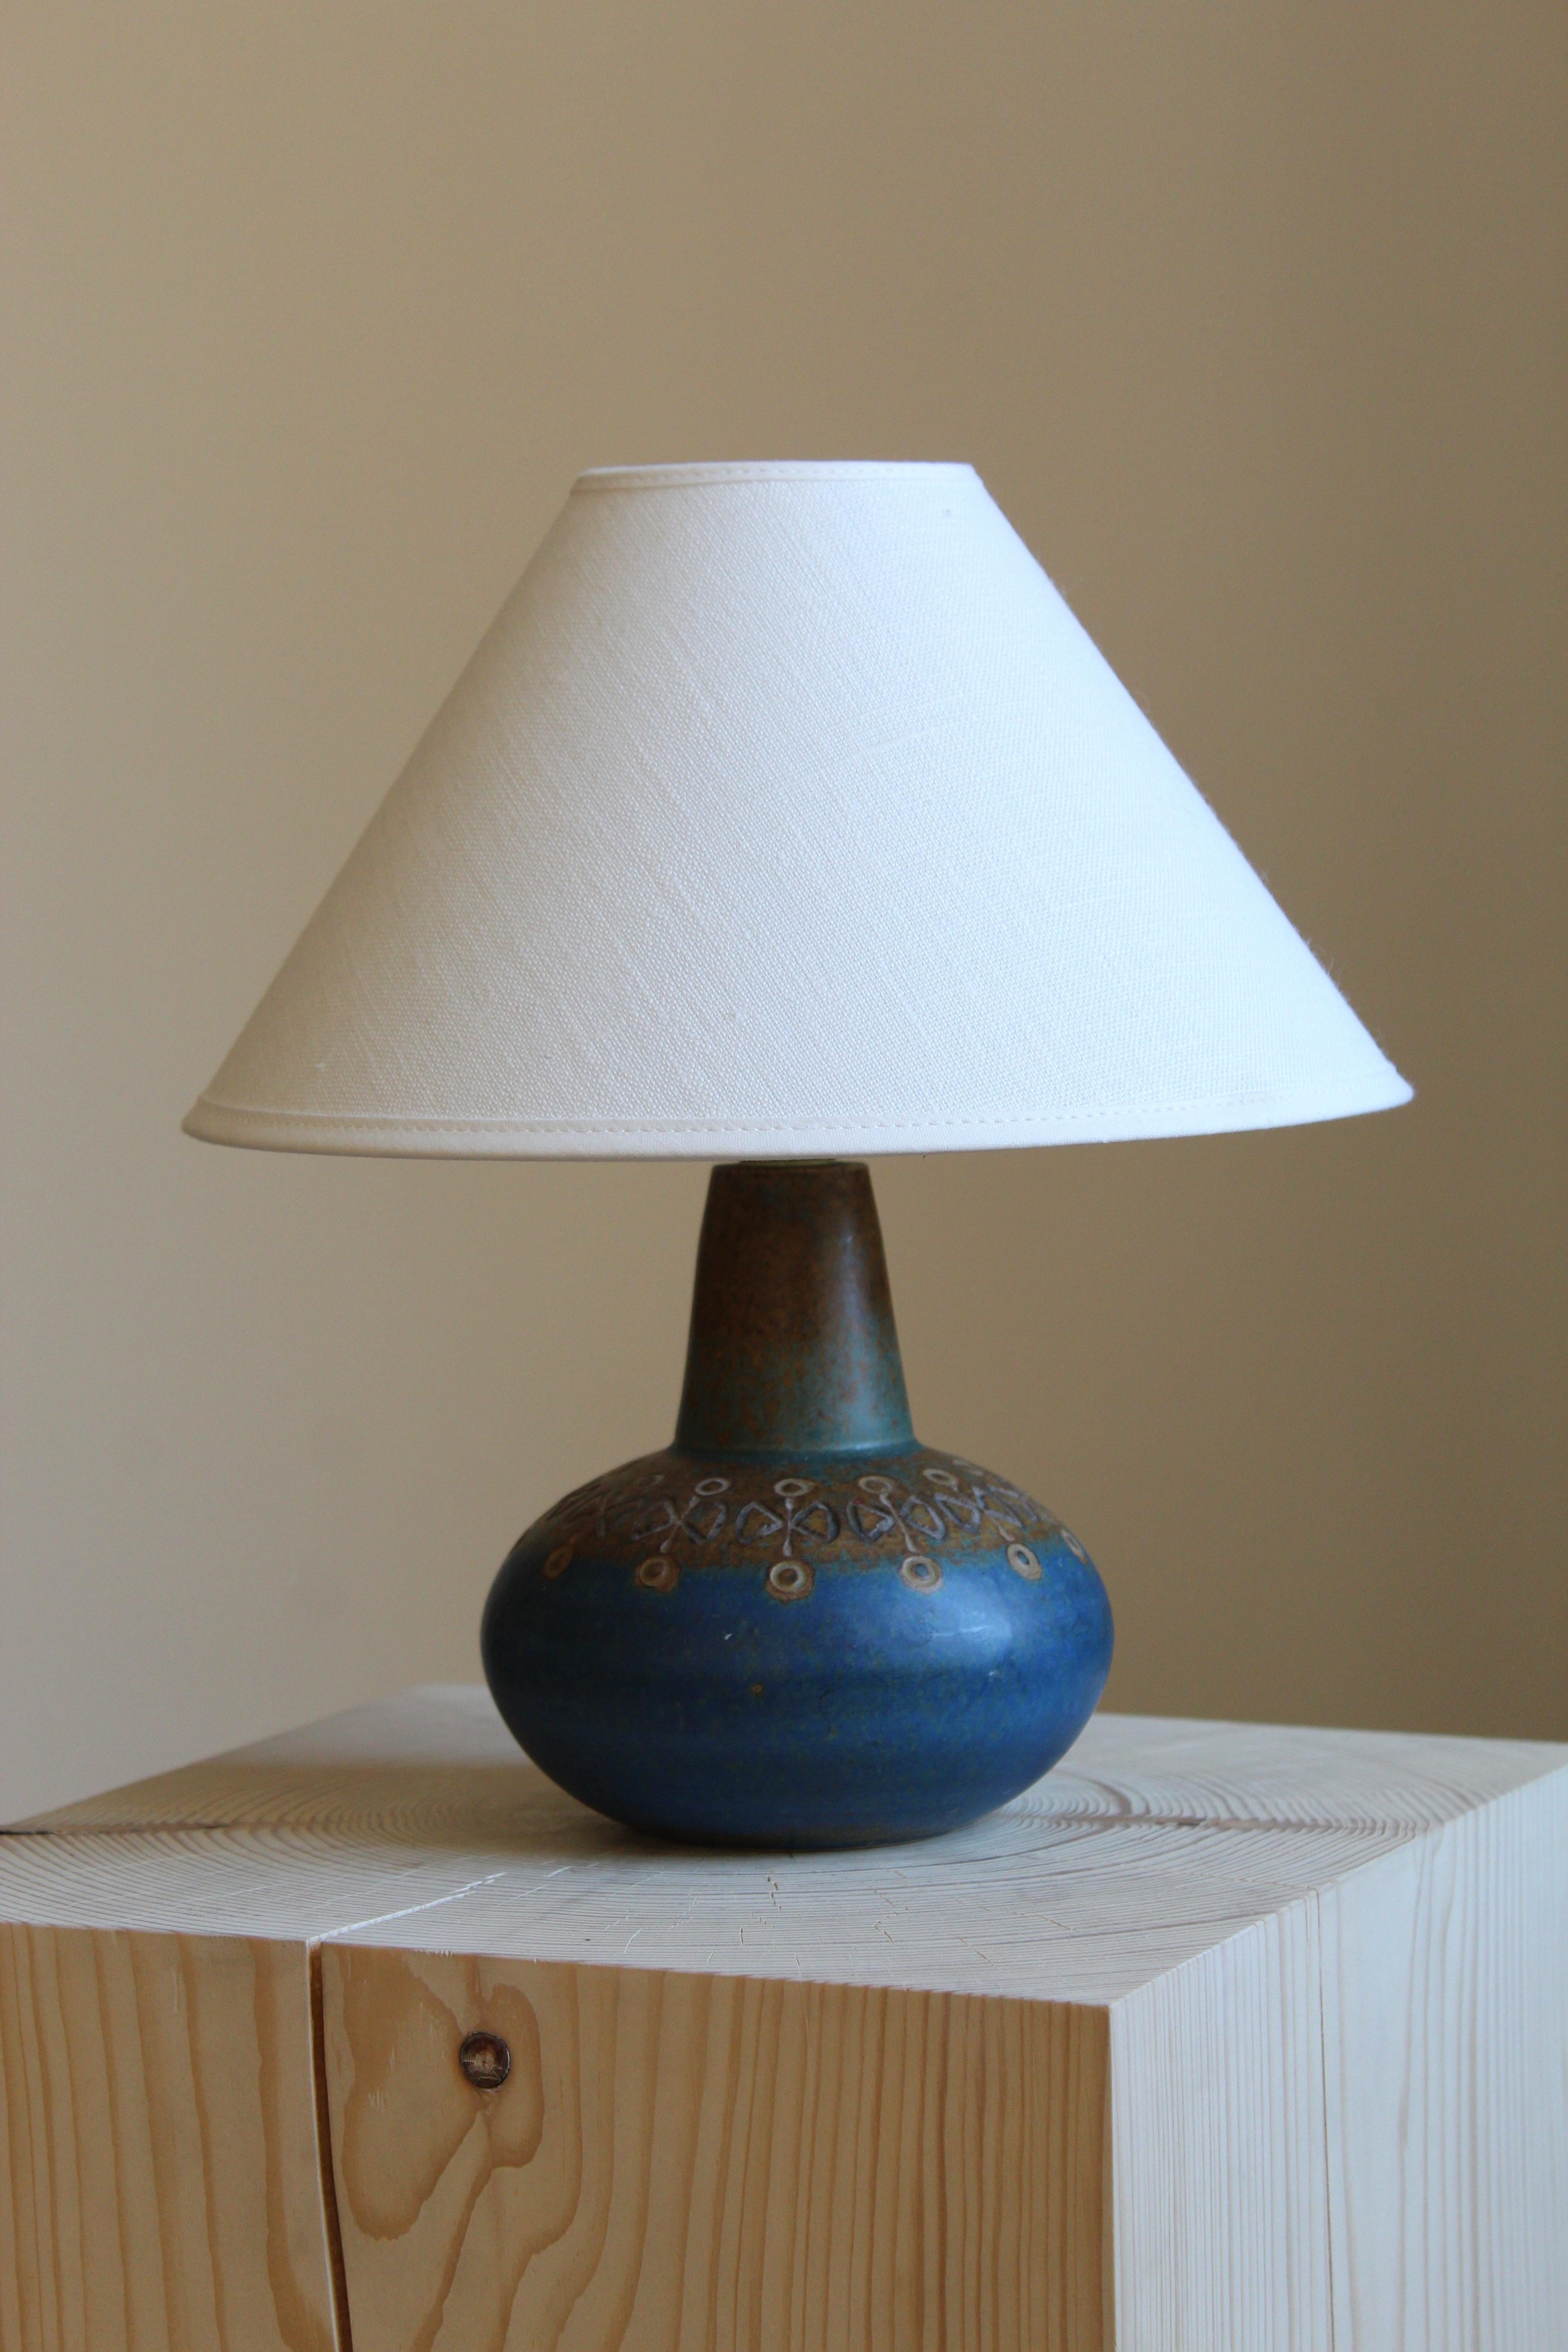 Eine Tischleuchte von Ulla Winblad. Handgefertigt aus Steinzeug von Allingsås Keramik, Schweden, ca. 1950er Jahre

Die Glasur weist blau-braune Farben auf.

Verkauft ohne Lampenschirm. Die angegebenen Maße verstehen sich ohne Lampenschirm. 